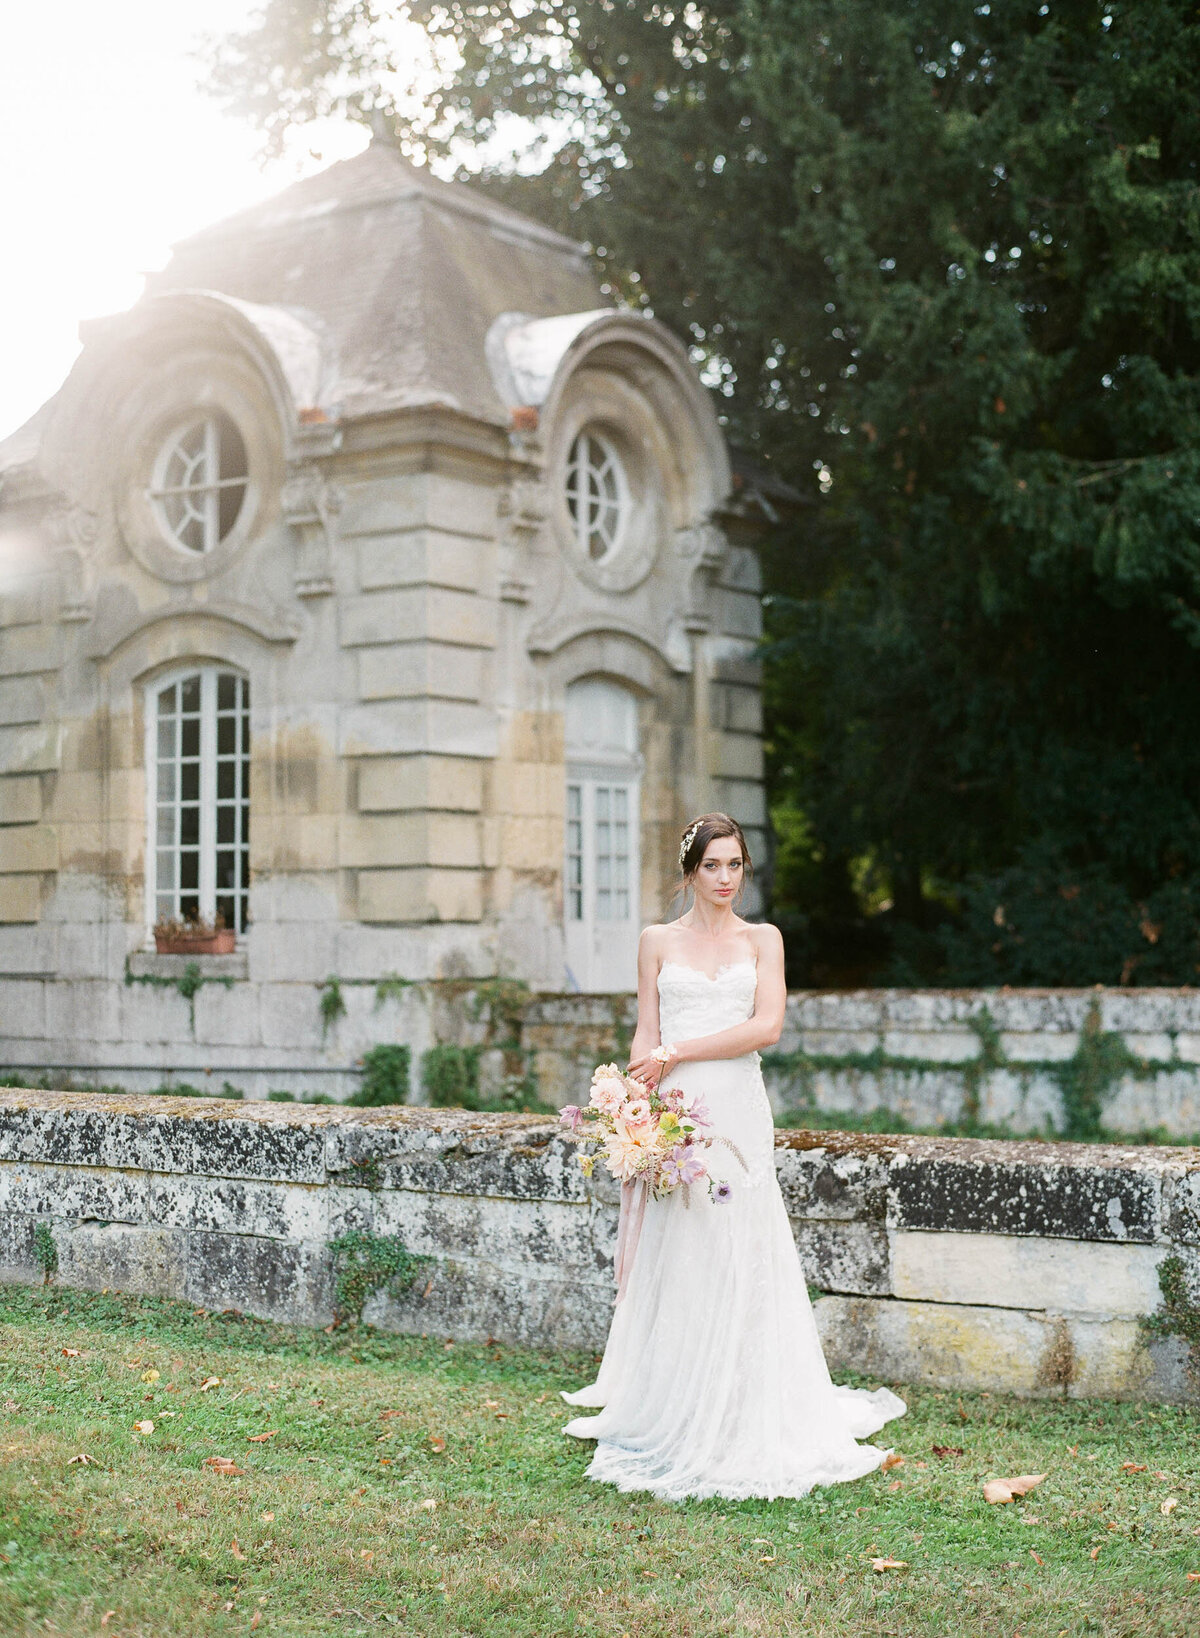 Alexandra-Vonk-wedding-chateau-de-champlatreux-France-22